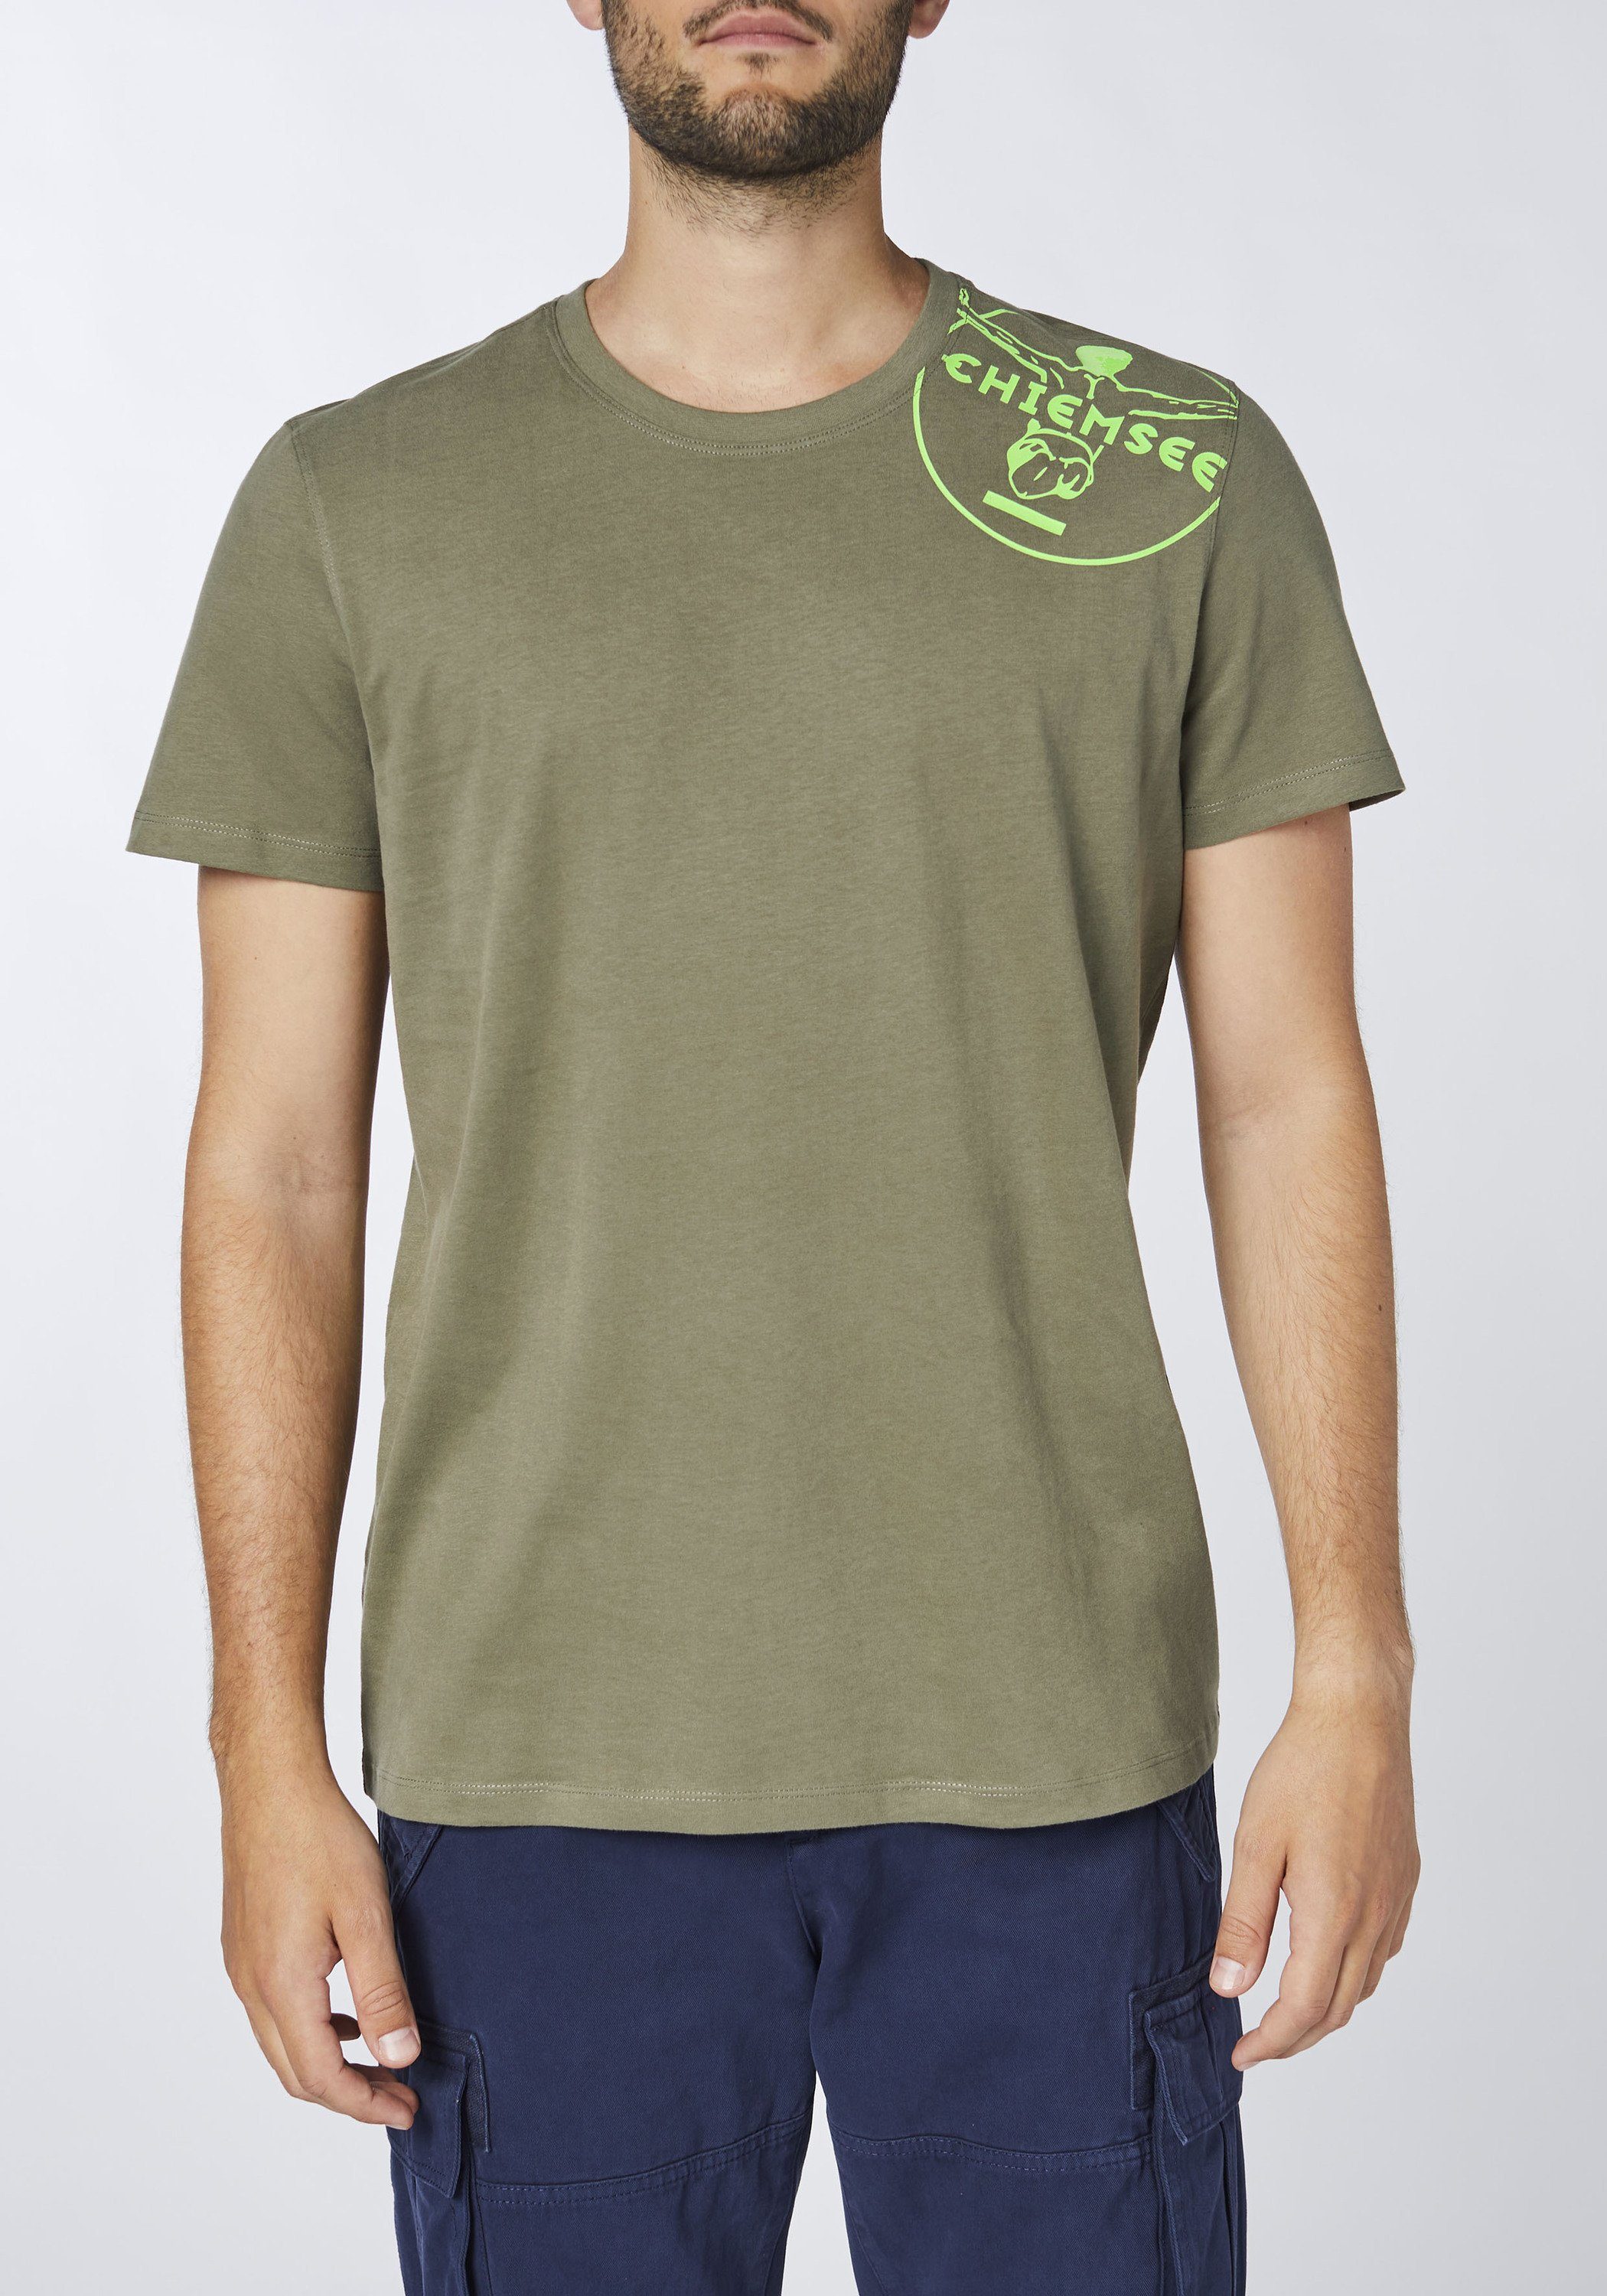 1 T-Shirt mit Chiemsee Olive Print-Shirt Jumper-Motiv Dusty